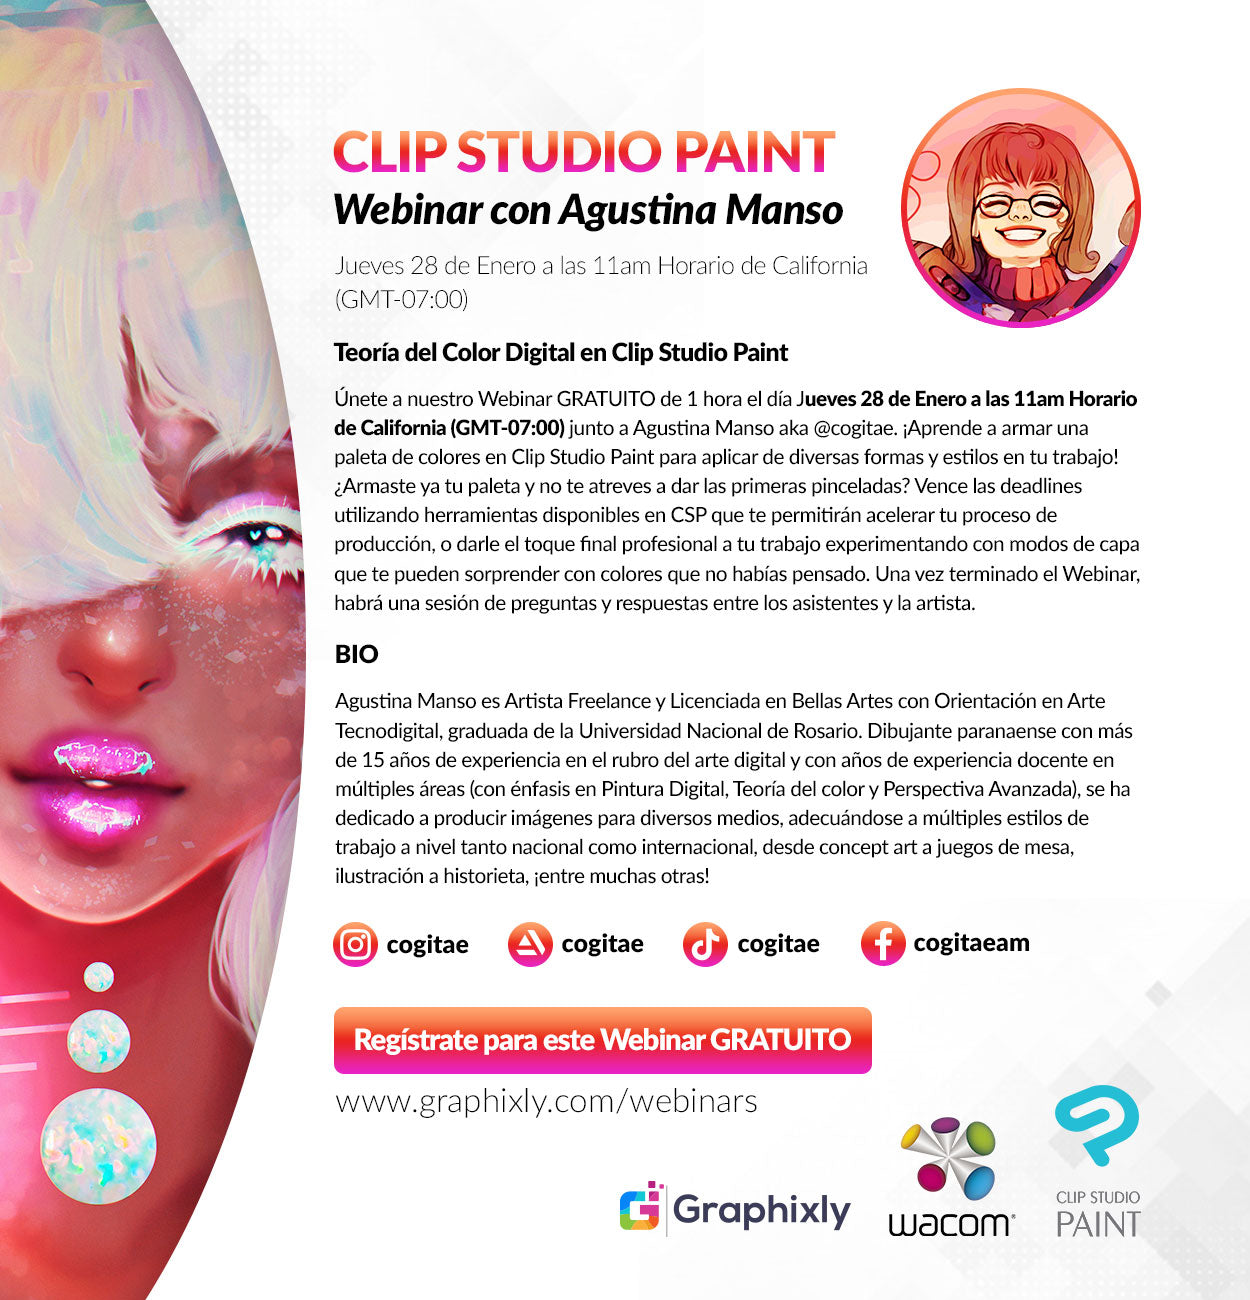 Webinar en español - Teoría del Color Digital en Clip Studio Paint con Agustina Manso